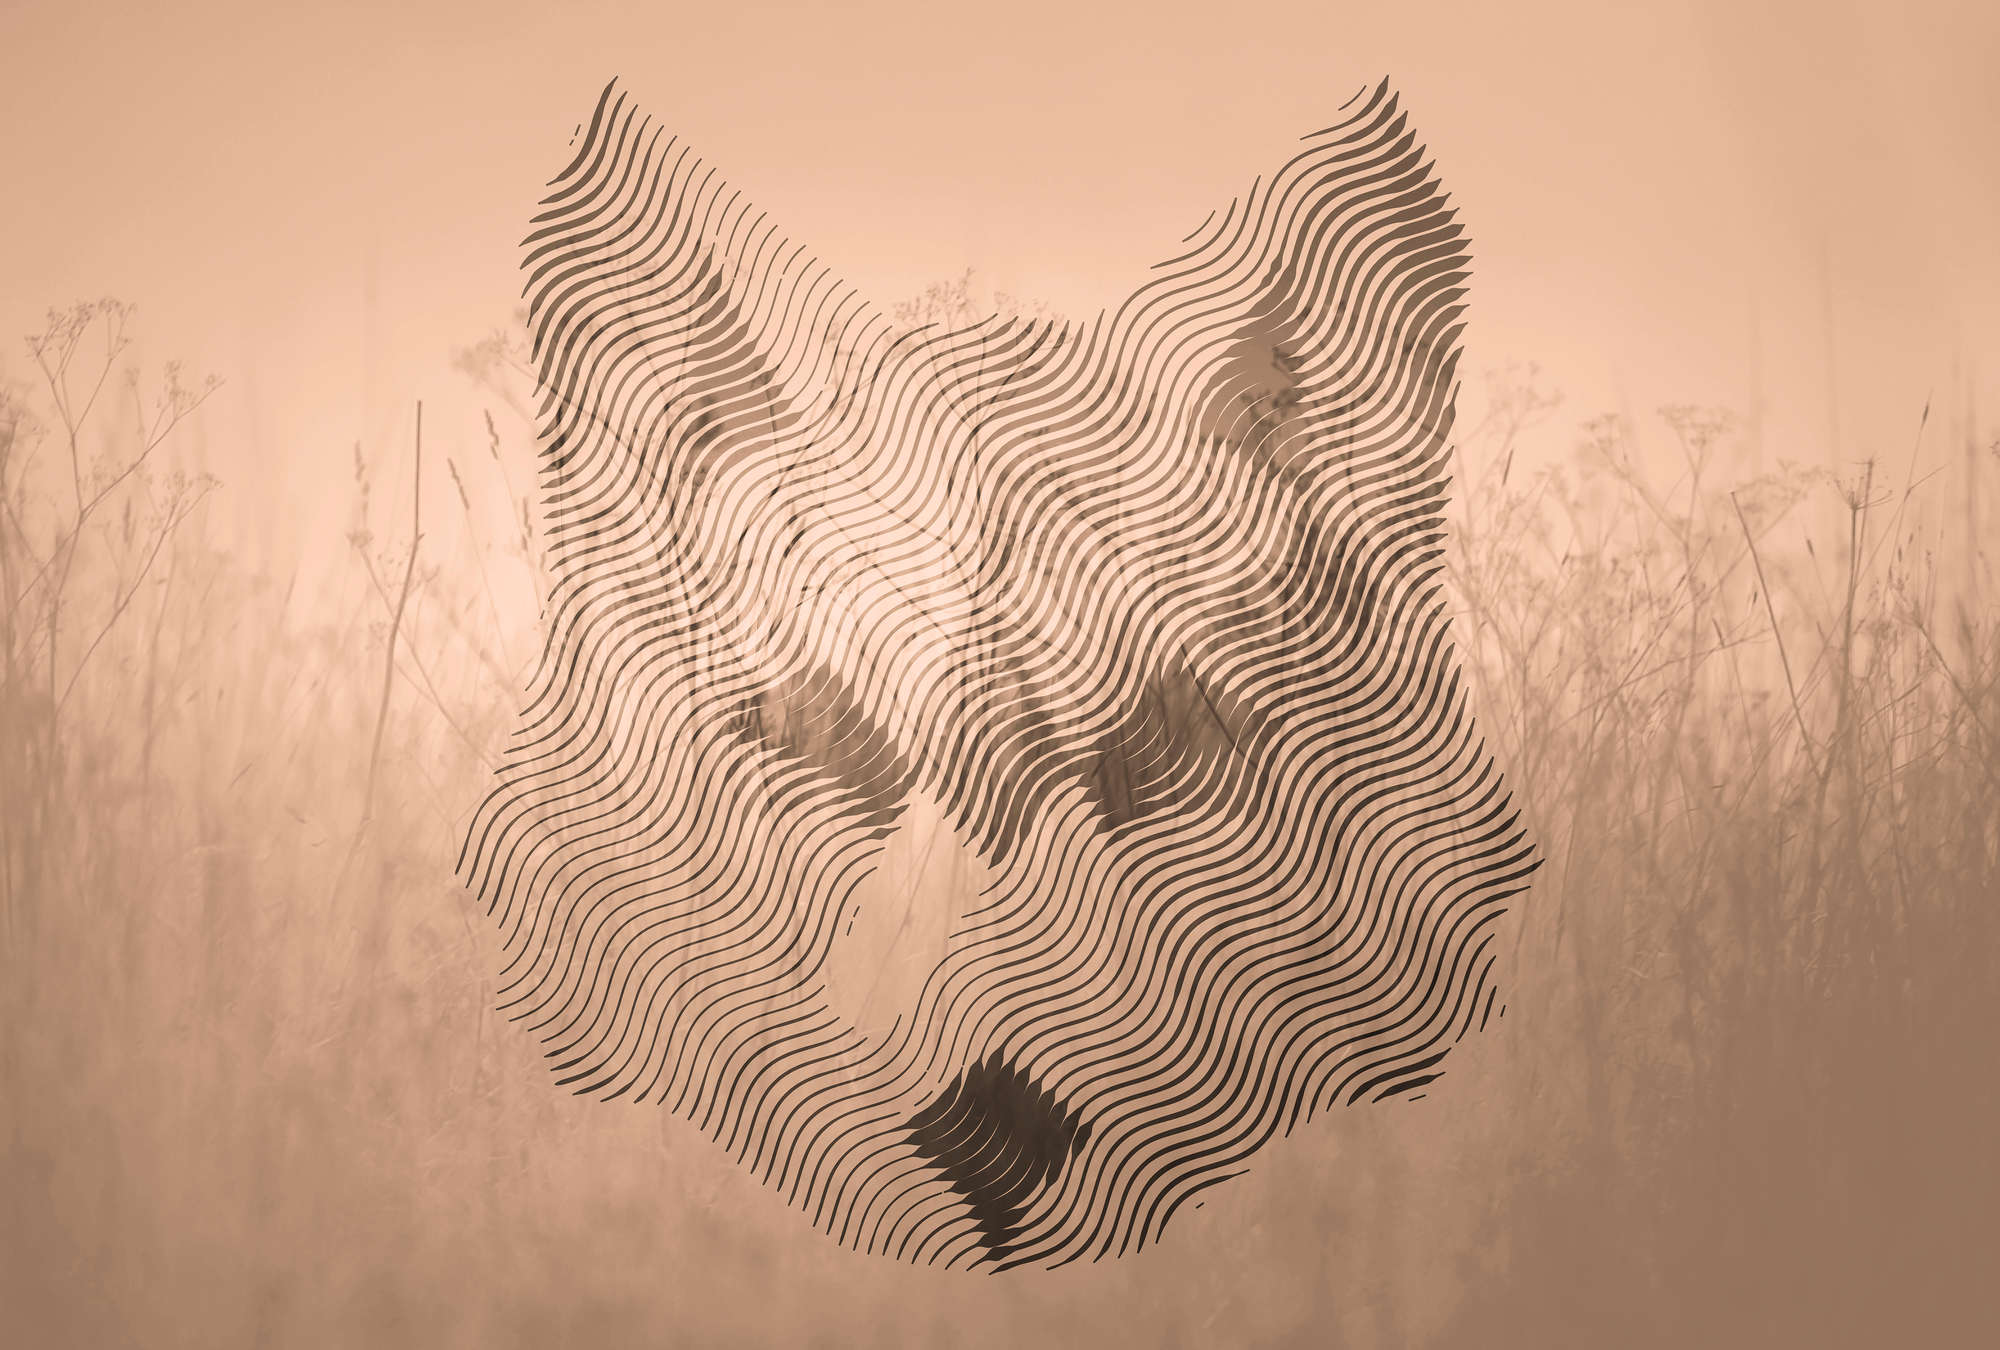             Photo wallpaper fox, graphic pattern & forest landscape - brown, beige, black
        